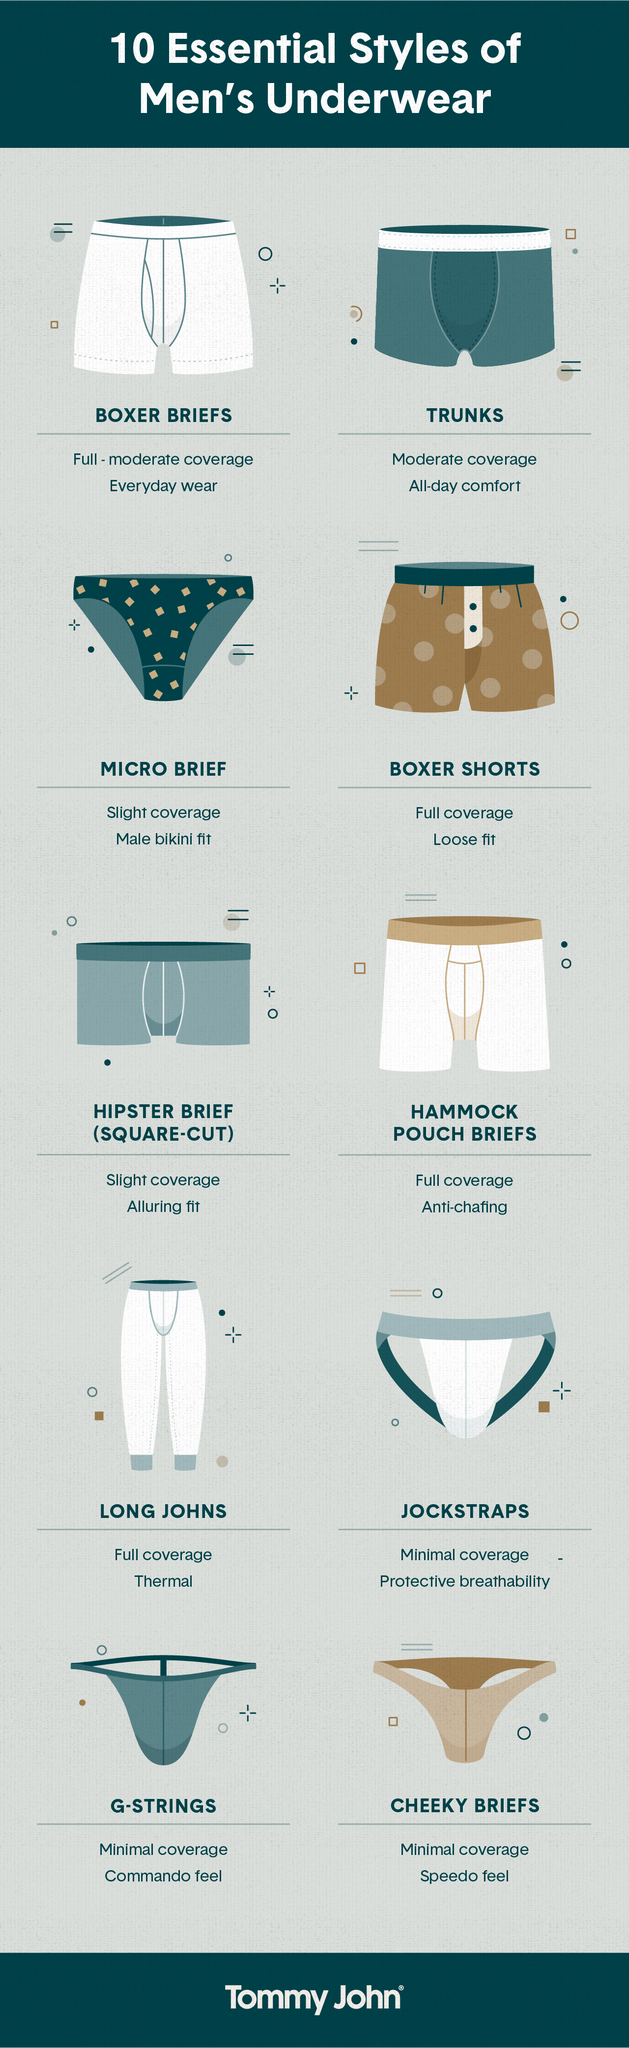 Types of Underwear for Men